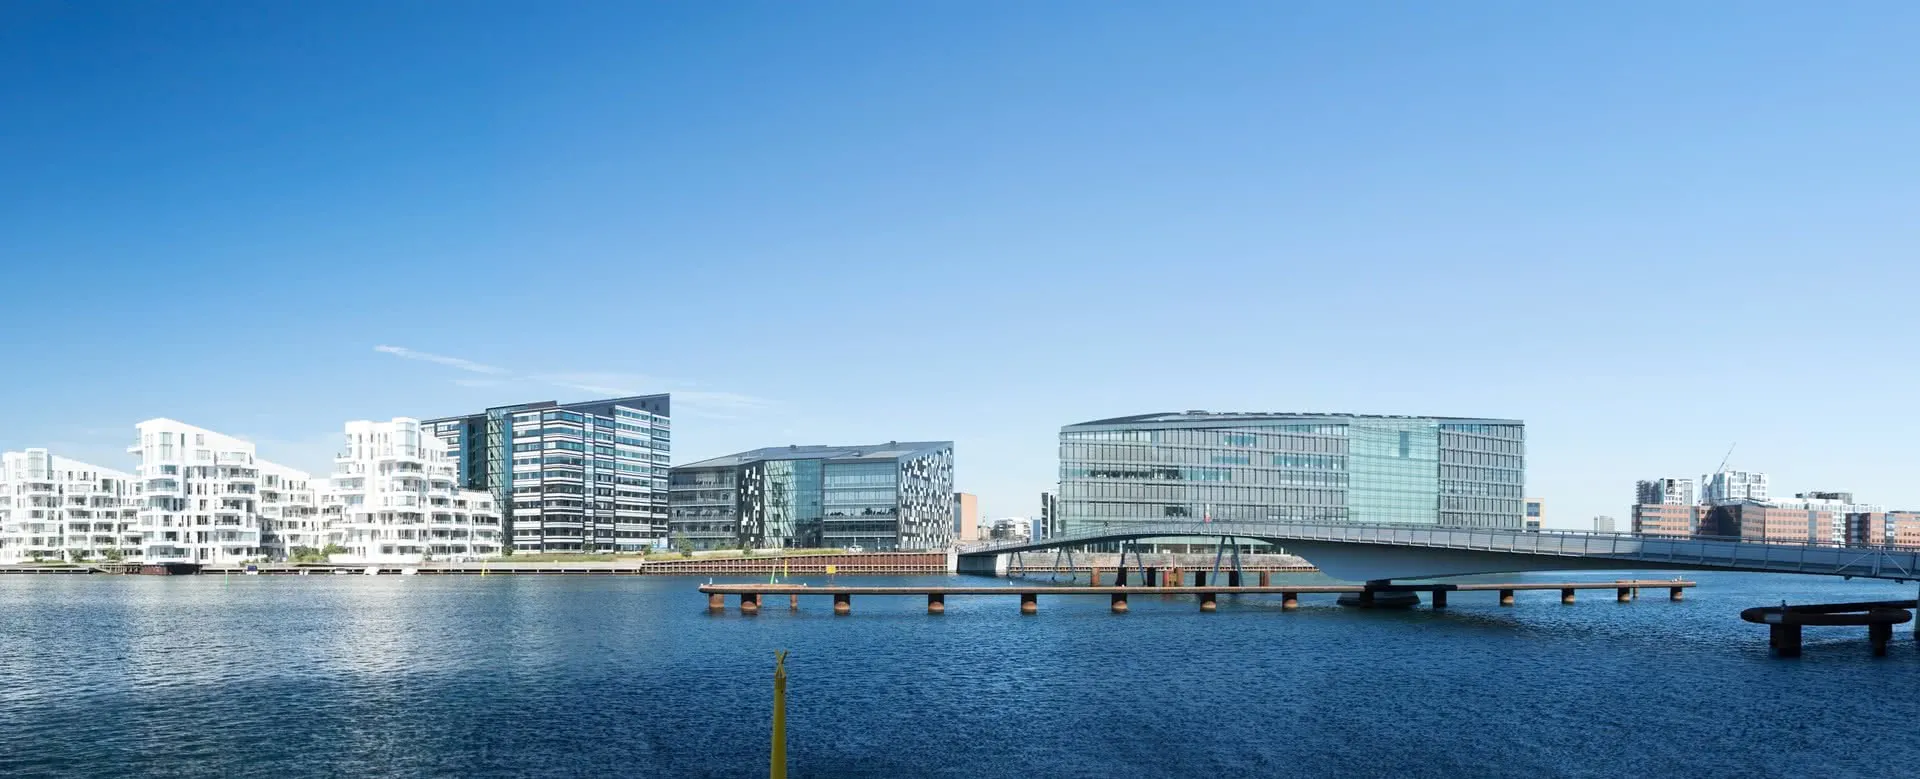 Kopenhagen Panorama Bild